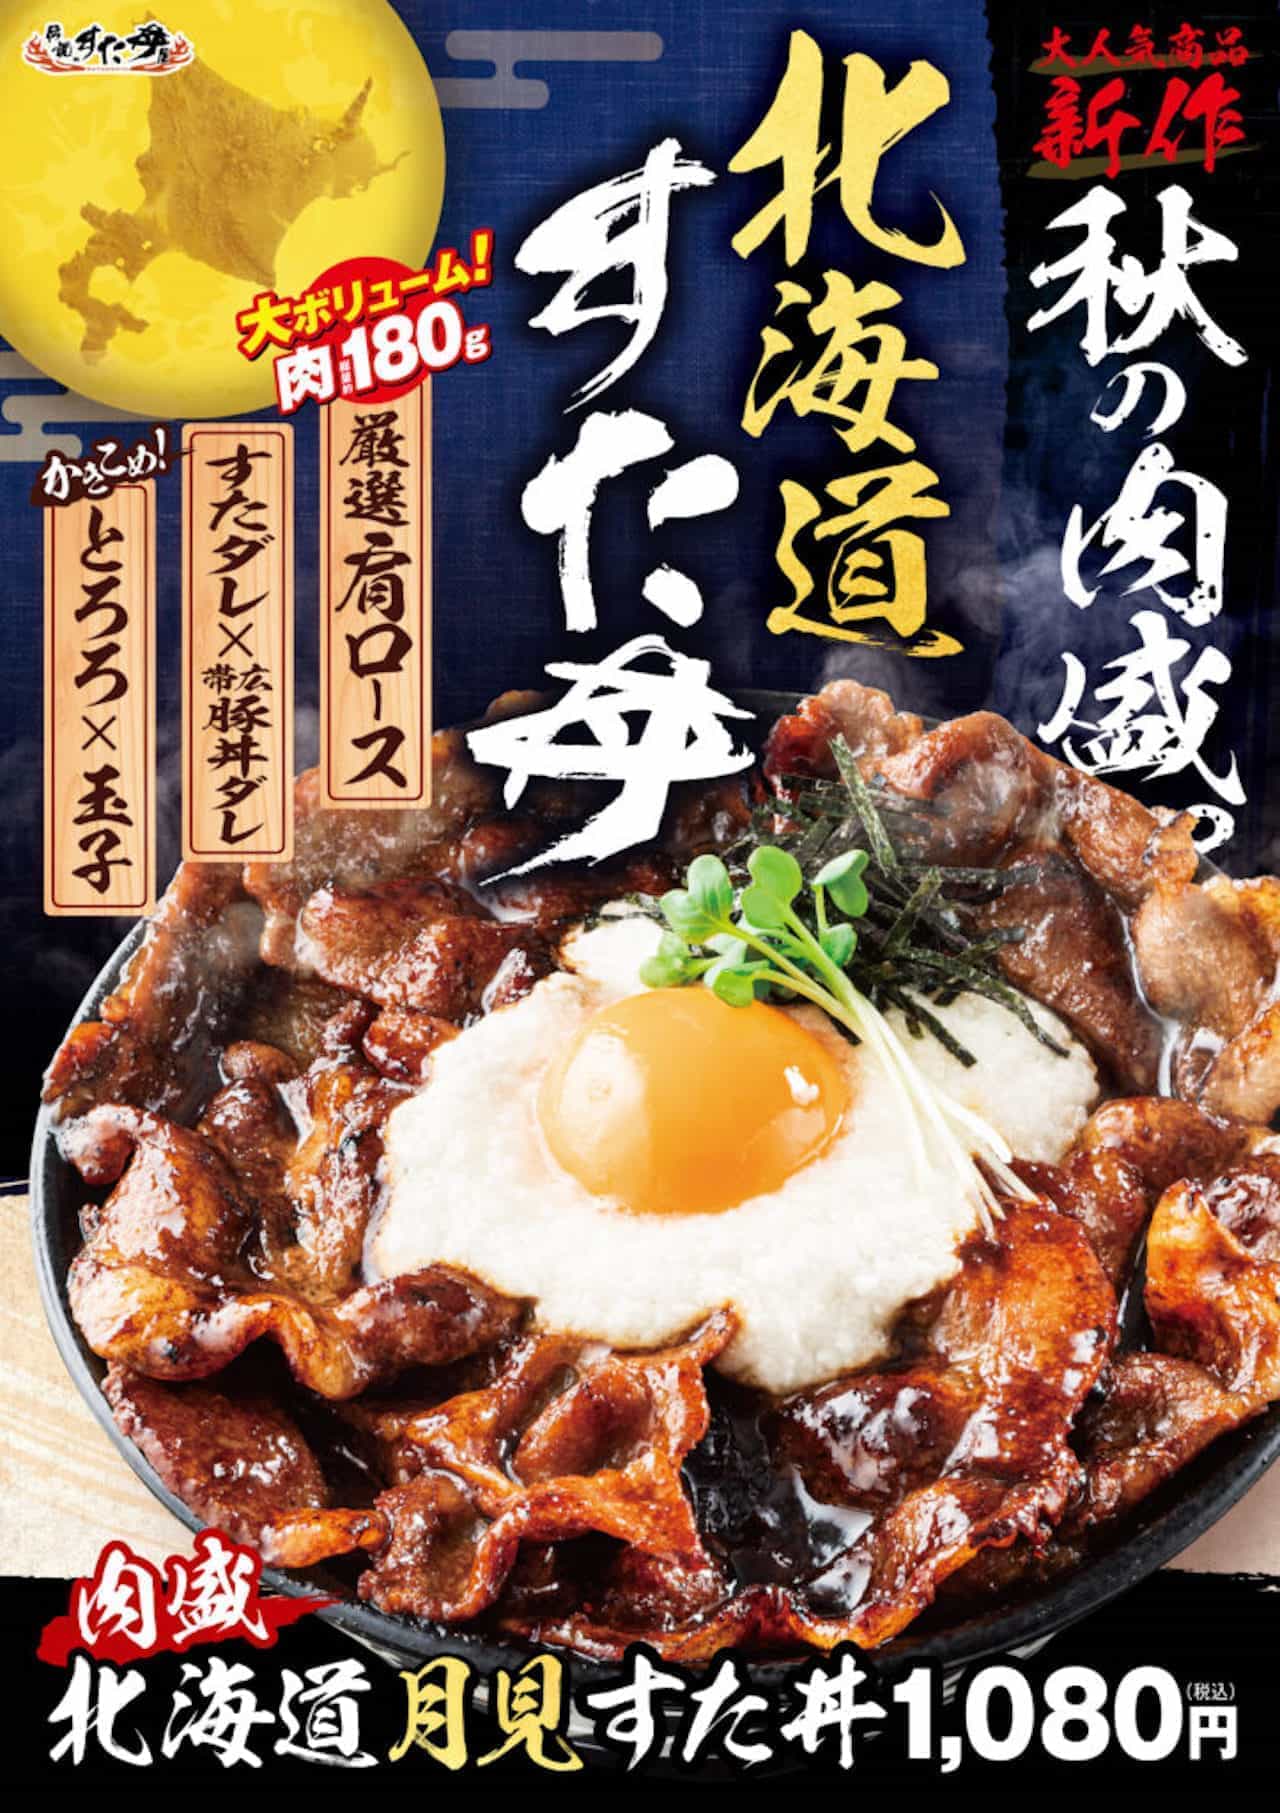 Densetsu no Sutadon-ya Meat bowl with Hokkaido Tsukimi Sutadon